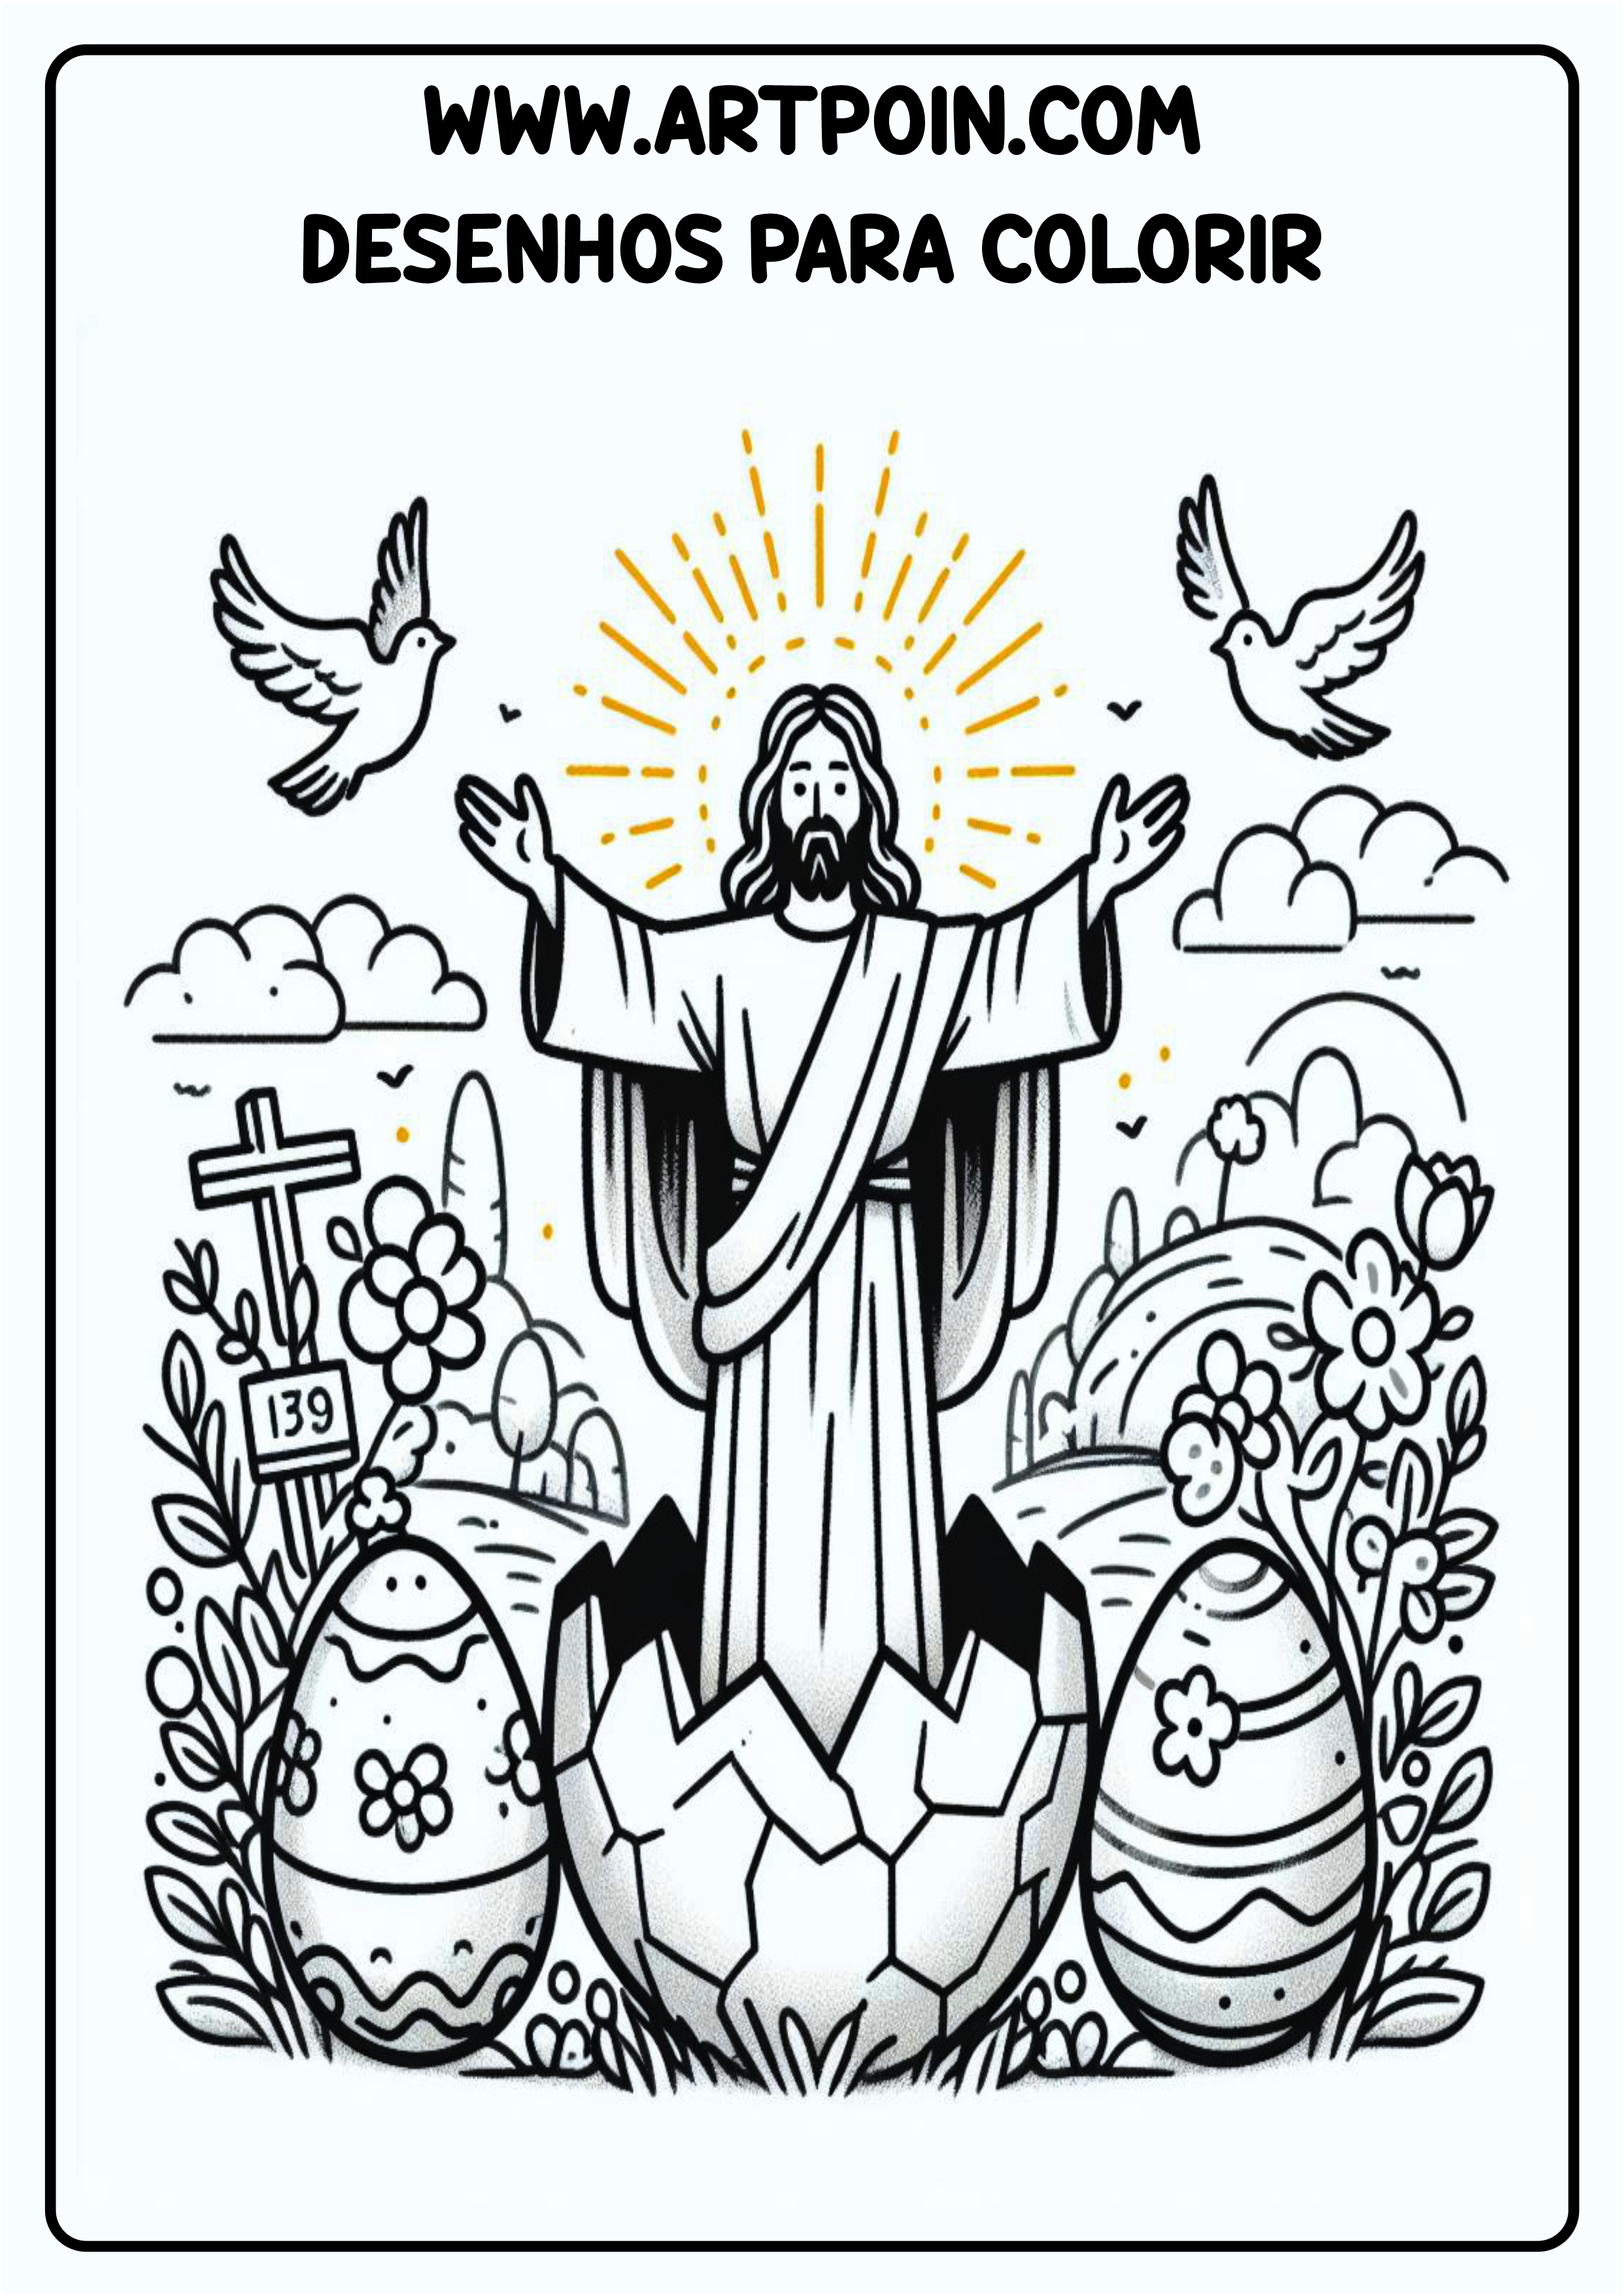 Desenho para colorir Jesus Ressuscitou na páscoa atividade para criança igreja png coloring page easter